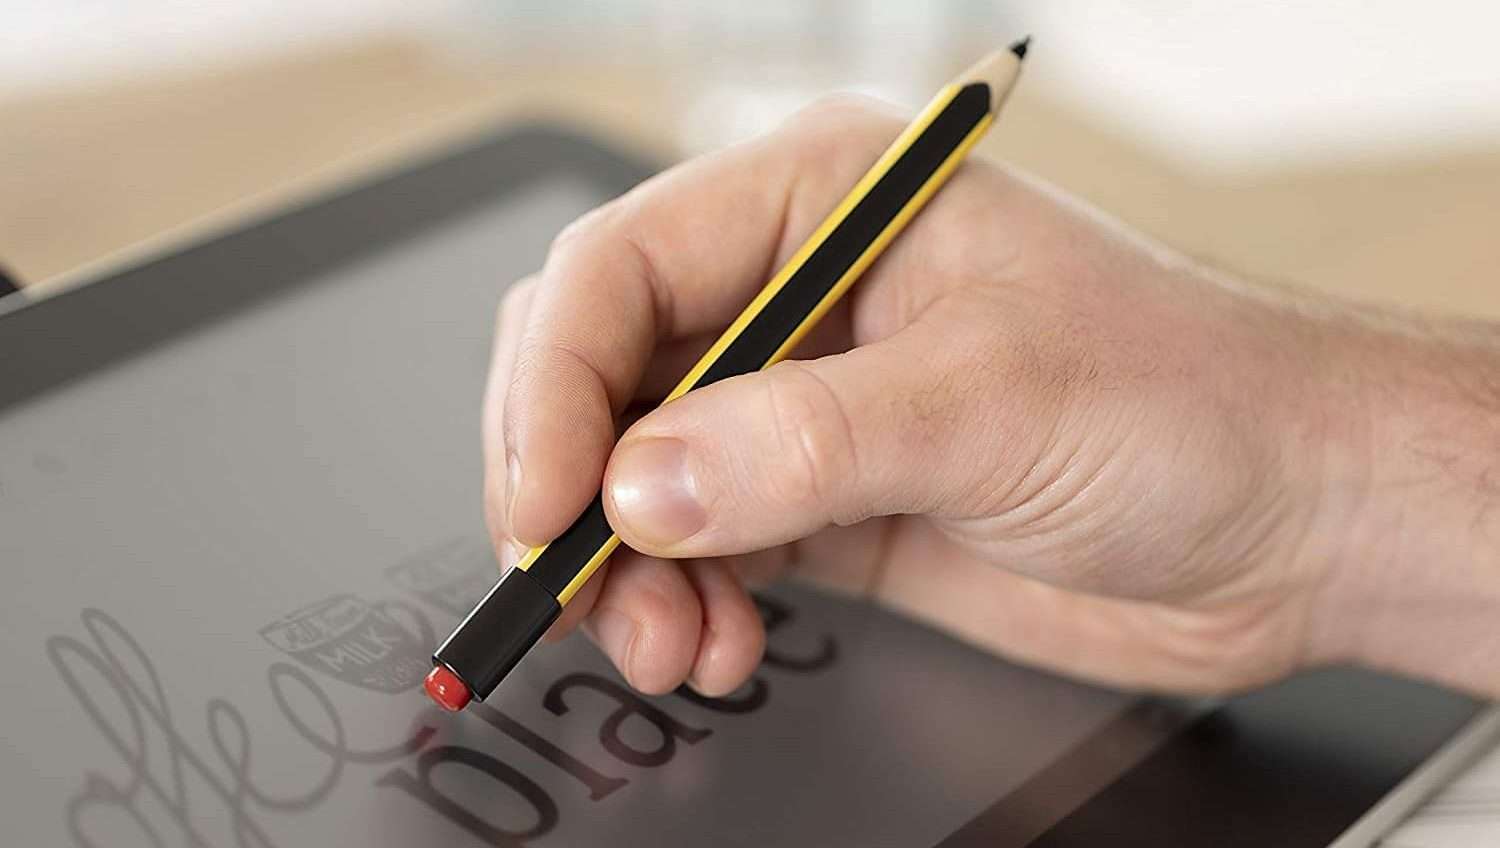 Migliori penne per tablet